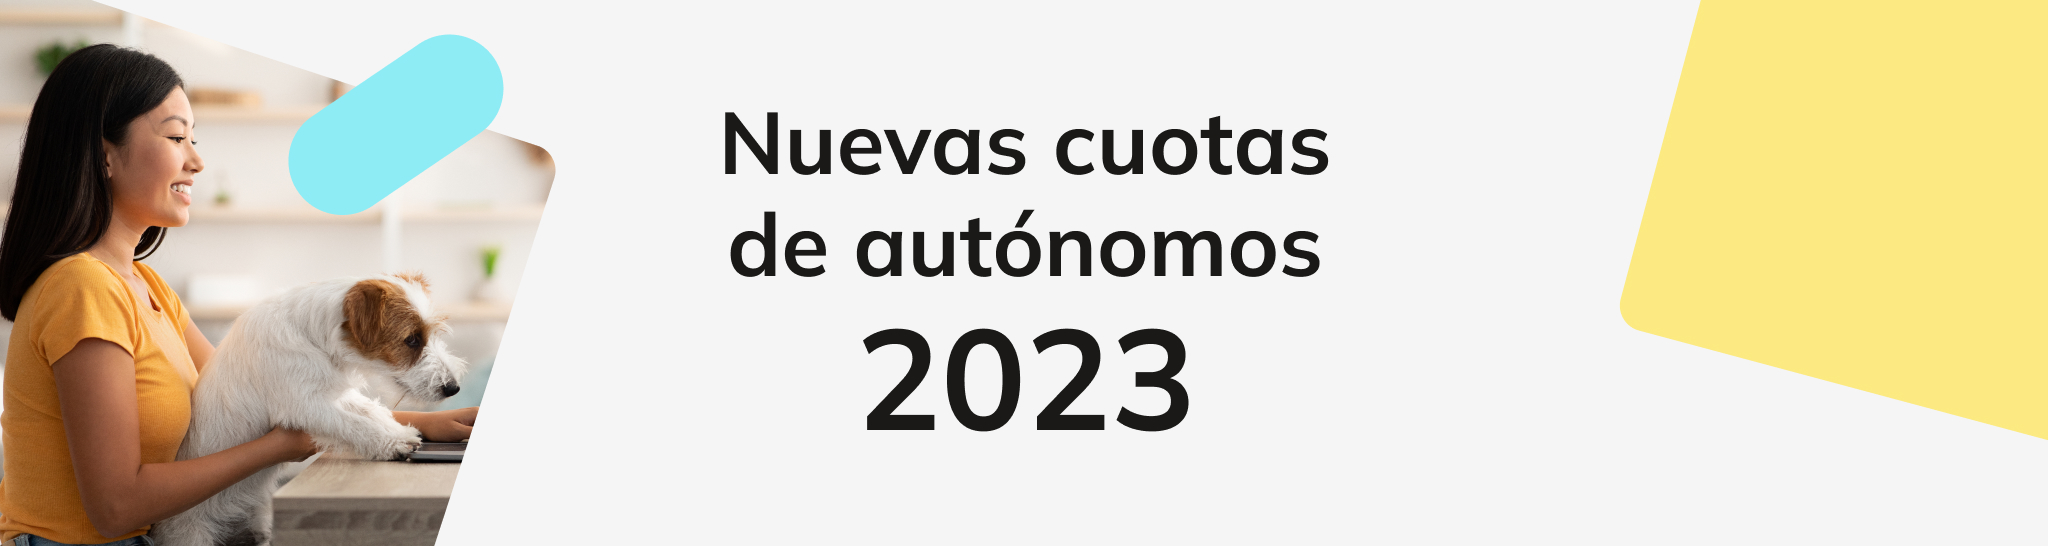 Nuevas cuotas de autónomos en 2023